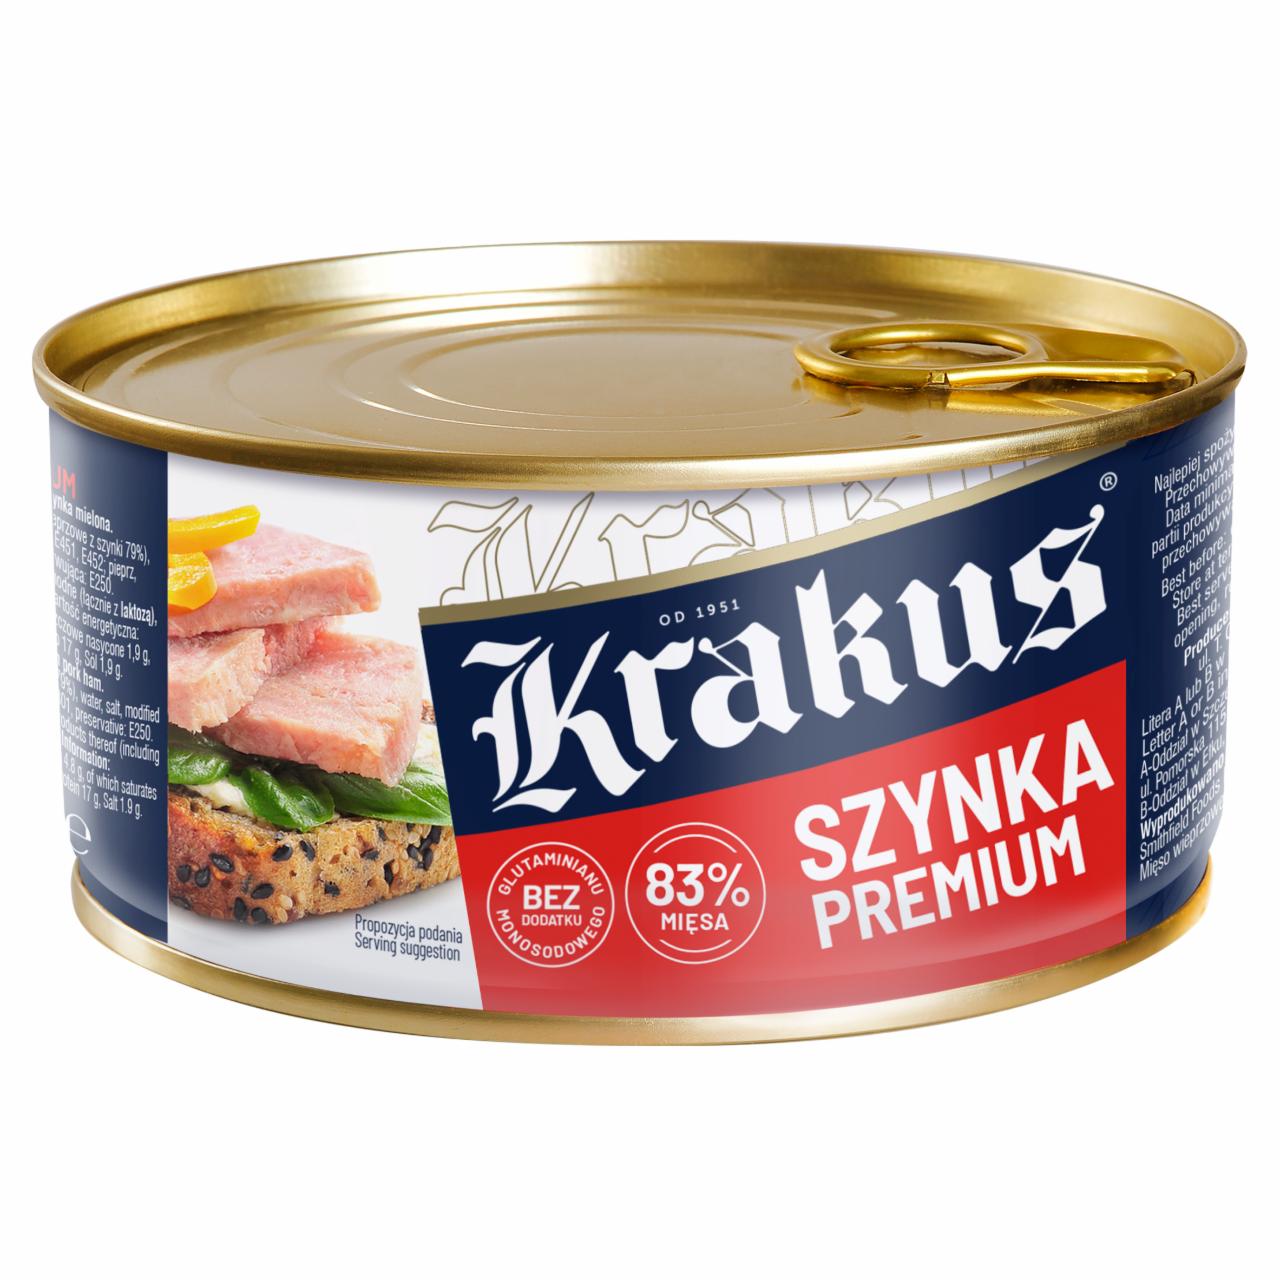 Фото - Krakus Premium Ham Preserved Meat